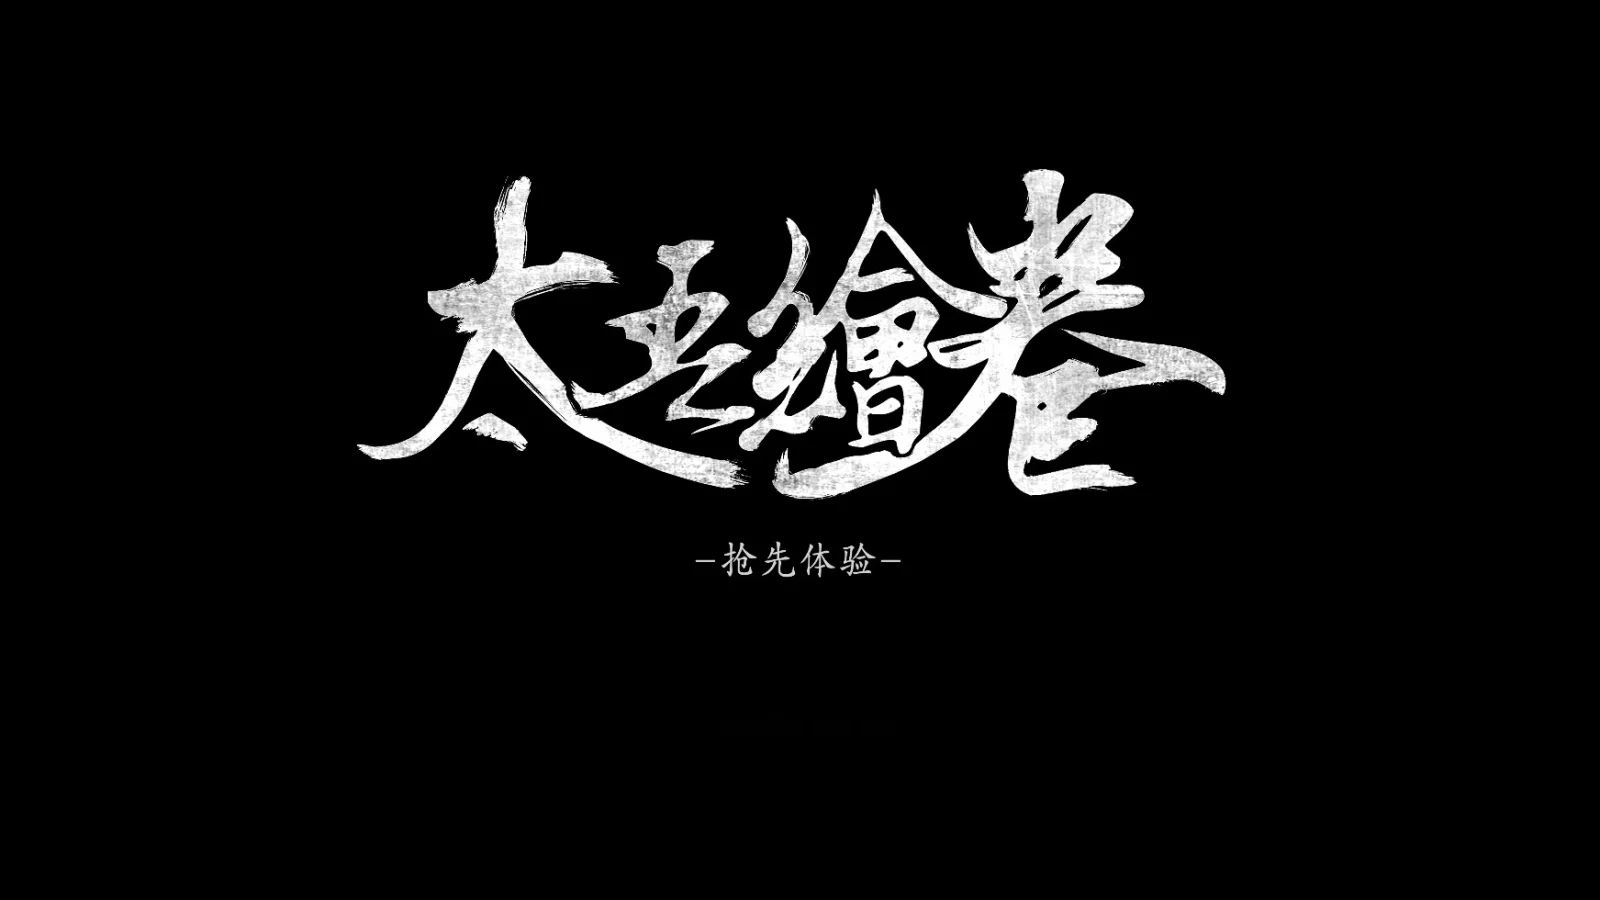 国产独立游戏《太吾绘卷》首周销量突破30万